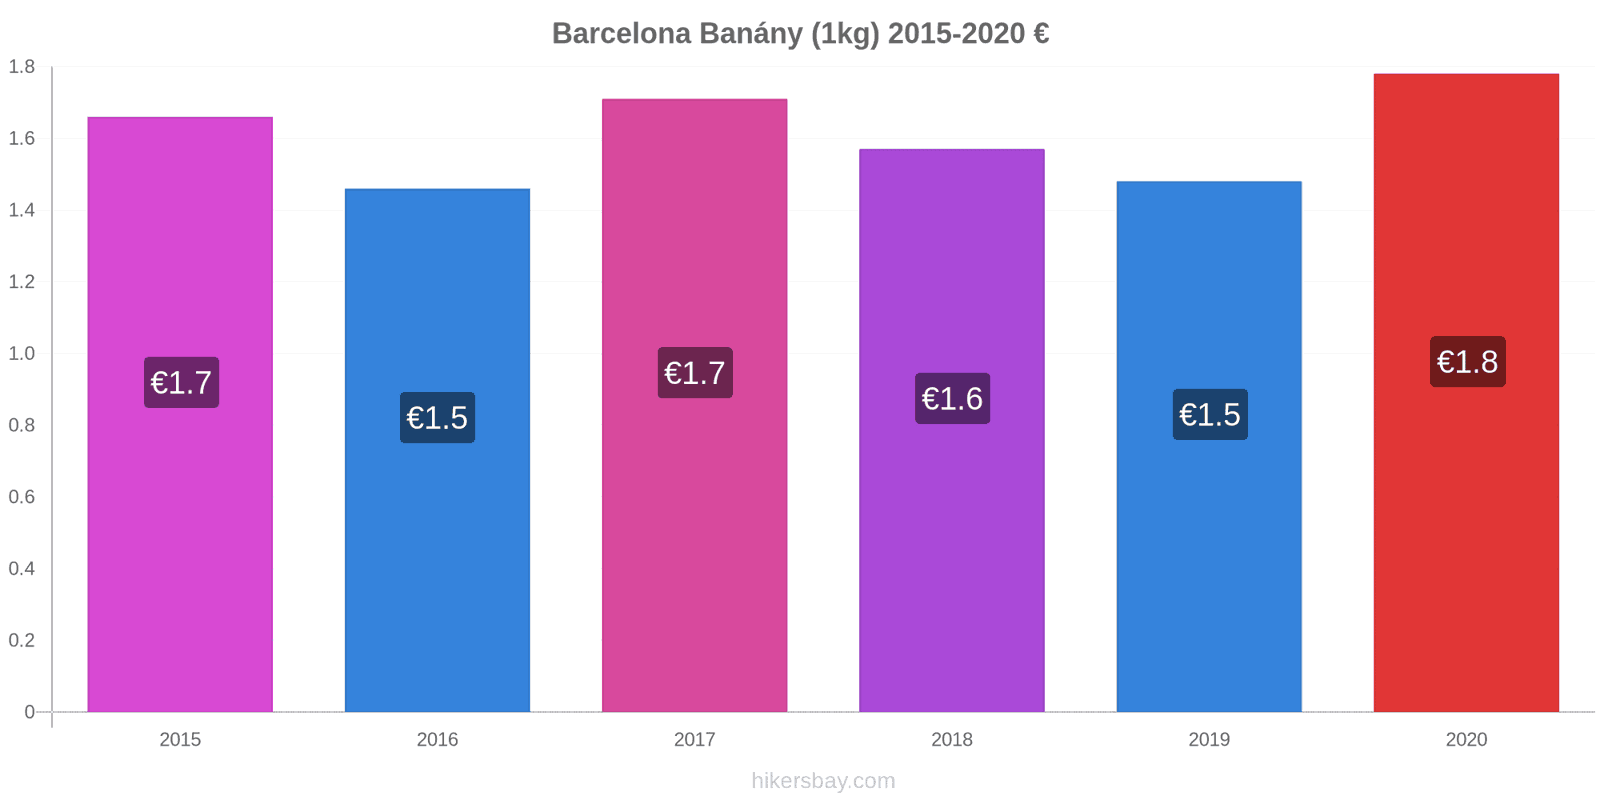 Barcelona změny cen Banány (1kg) hikersbay.com